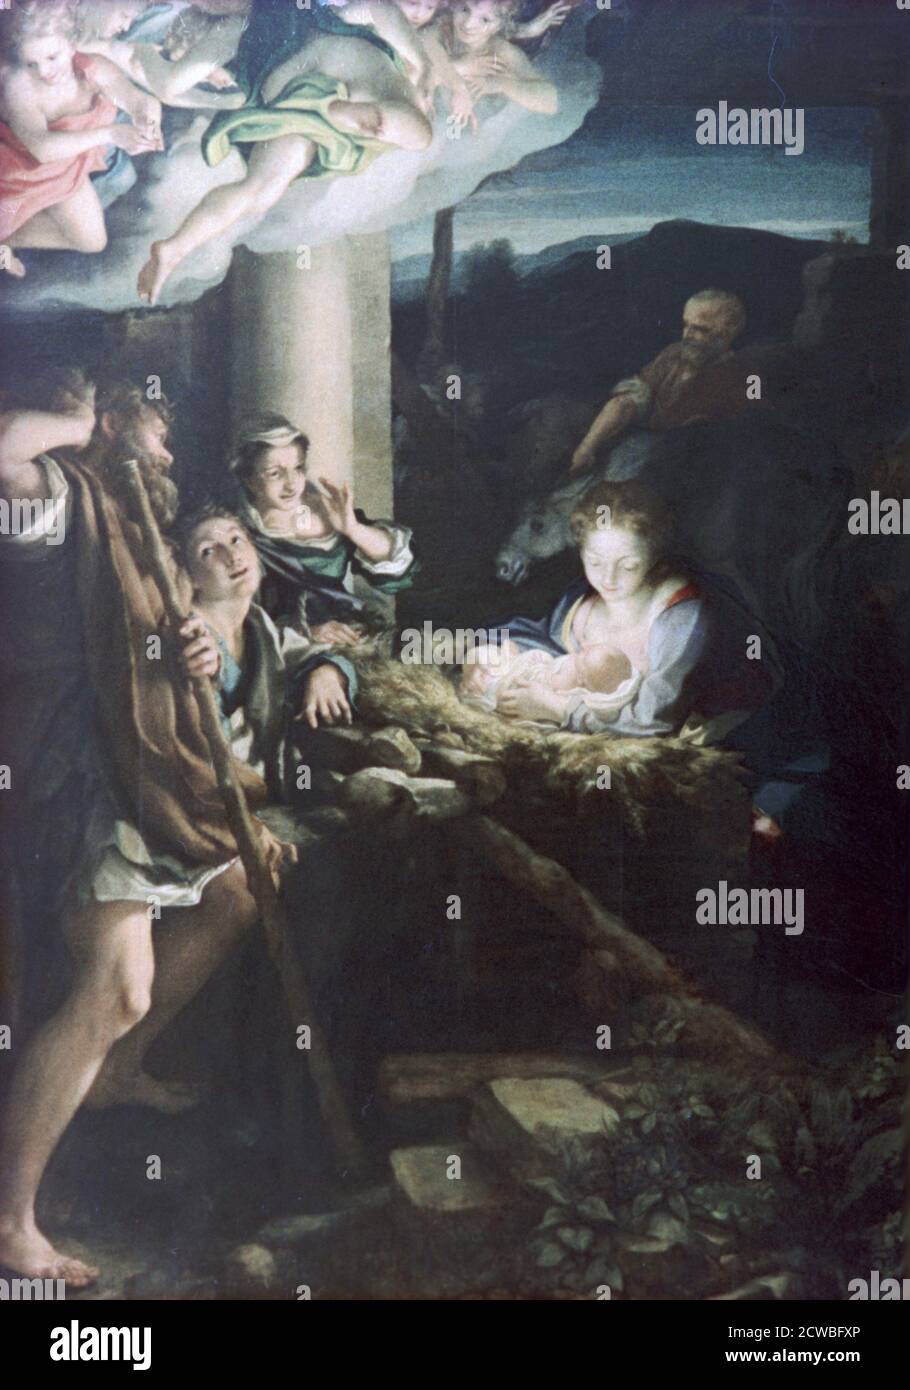 Nativity Scene', 1522-1530. Artist: Antonio da Correggio. Correggio (1489-1534) was the leading painter of the Parma school of High Italian Renaissance. Stock Photo